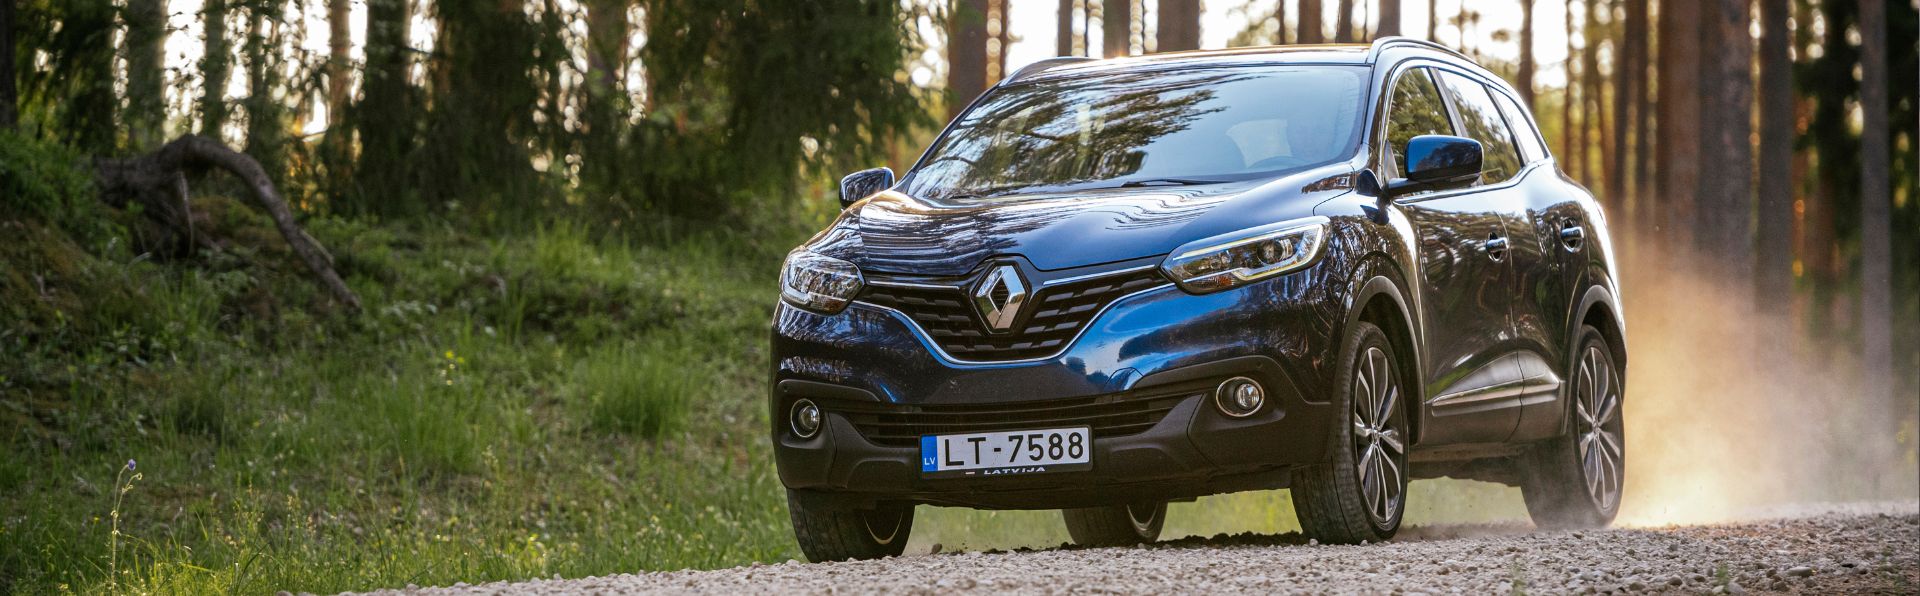 Our 2022 Renault Kadjar Review